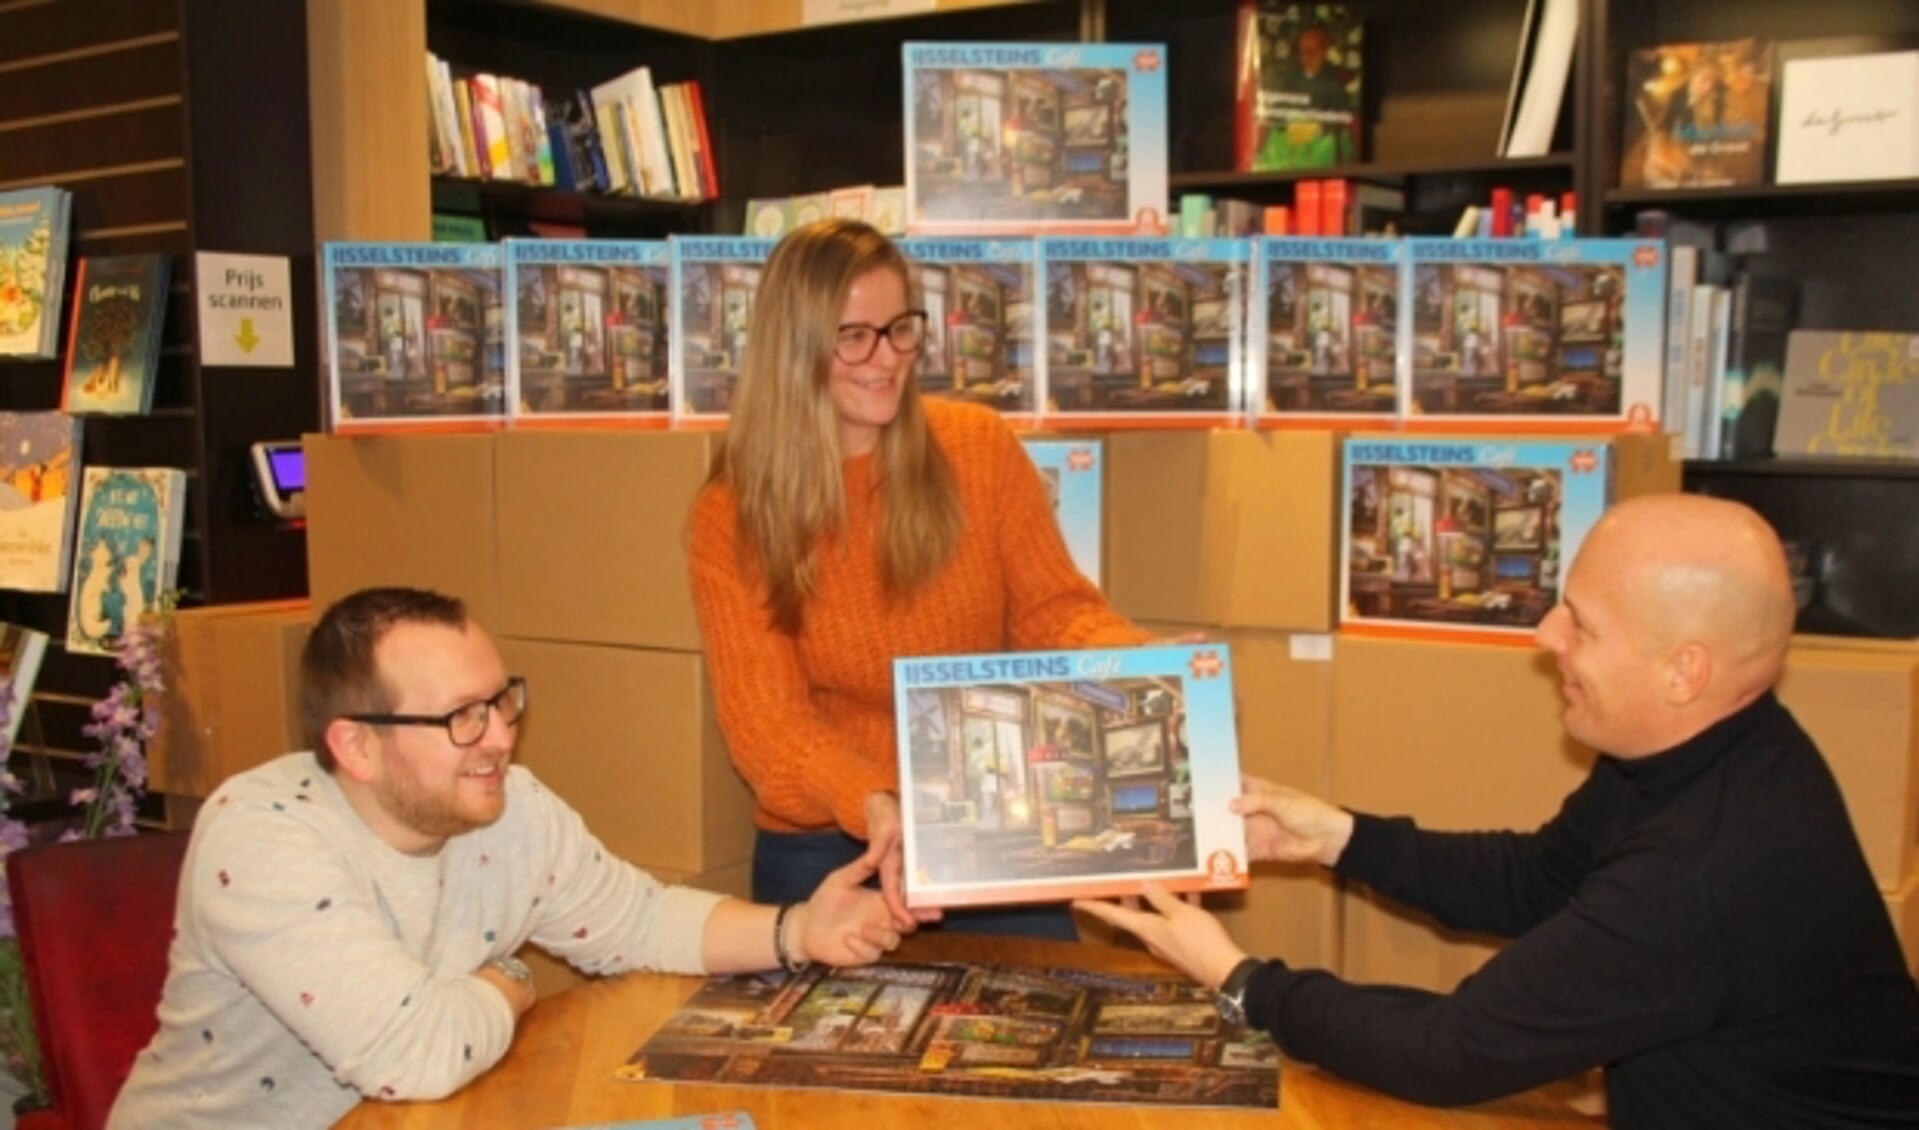 Wouter Vermaat (rechts) ontvangt uit handen van Stephan en Melvienne Mulder van The Readshop de eerste IJsselsteinpuzzel: "We zijn wel klaar met voor de tv hangen." (Foto: Lysette Verwegen)